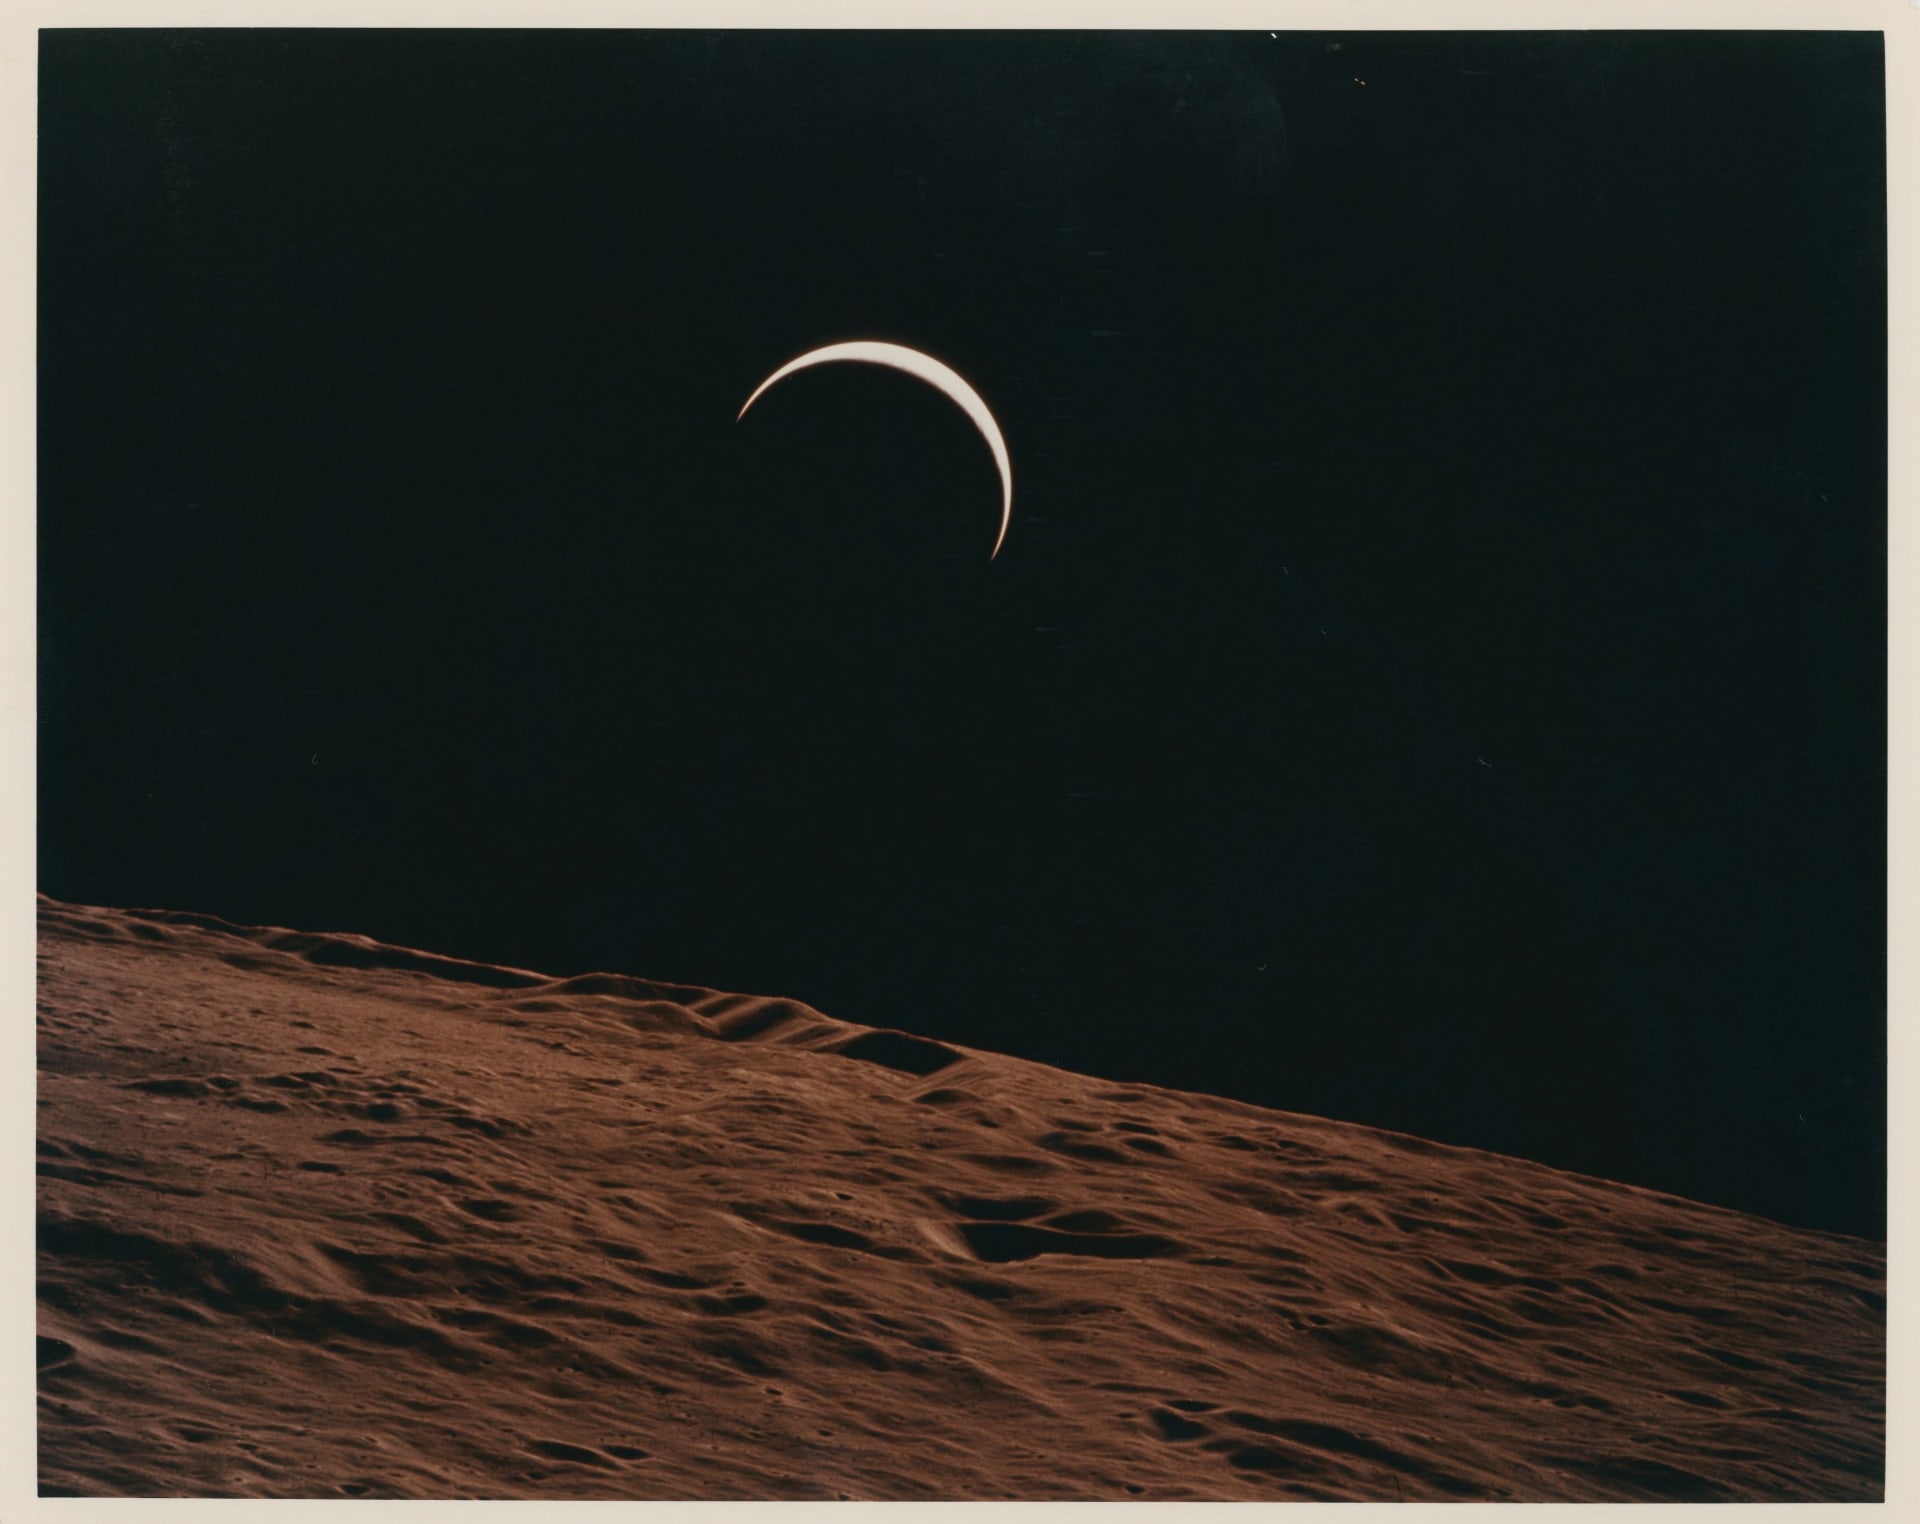 منها أول صورة "سيلفي" في الفضاء.. طرح صور نادرة  من مهمات فضاء تاريخية للبيع في المزاد